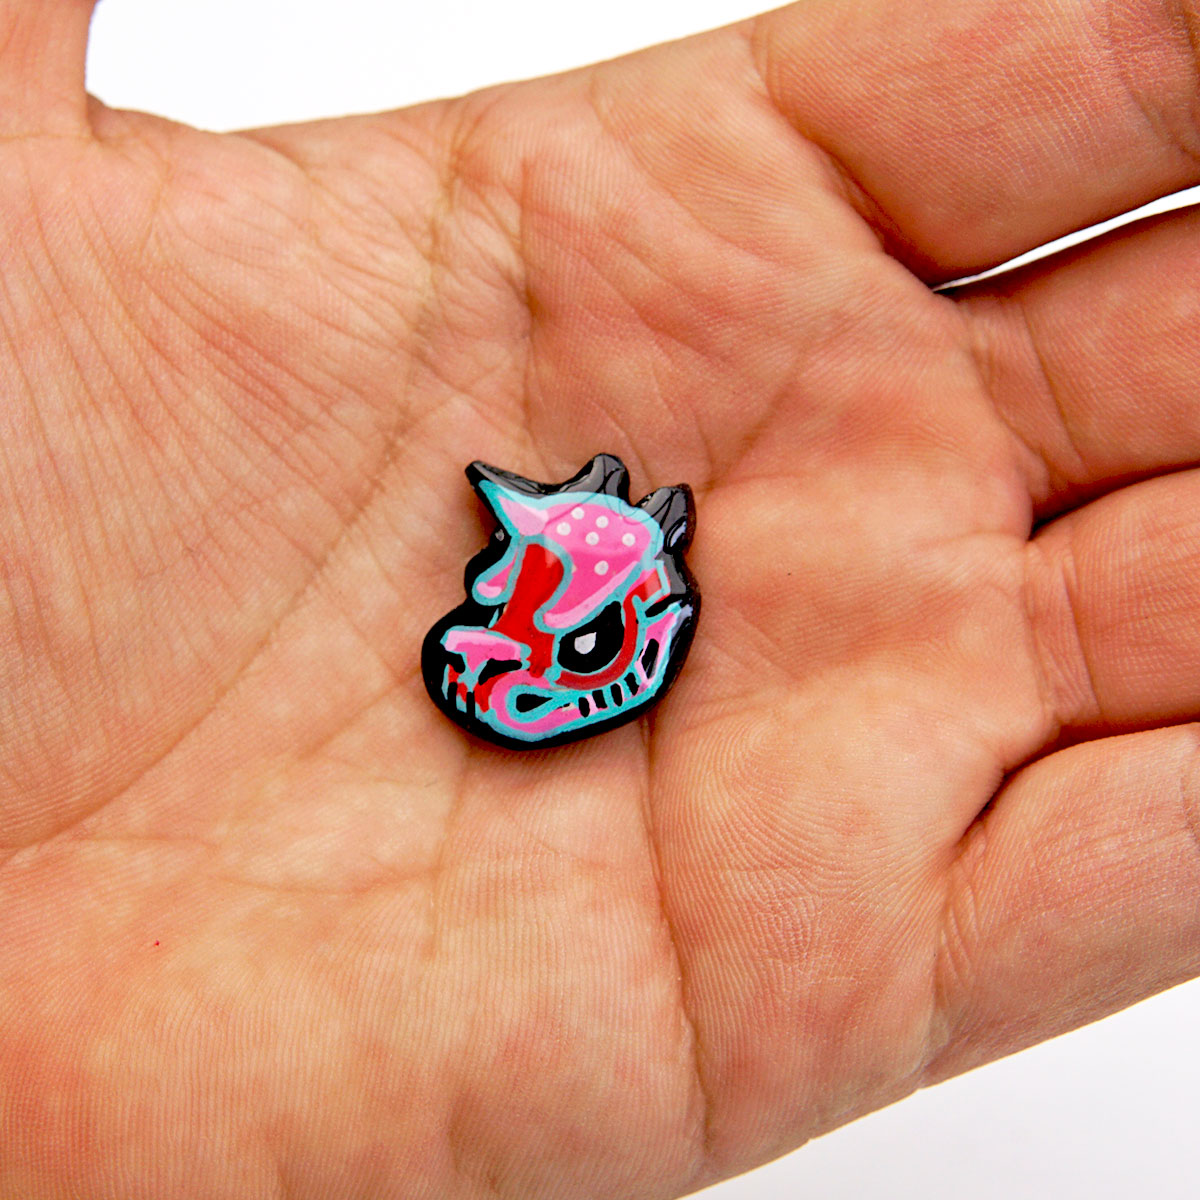 Grumpicorn Skull Handmade Pin